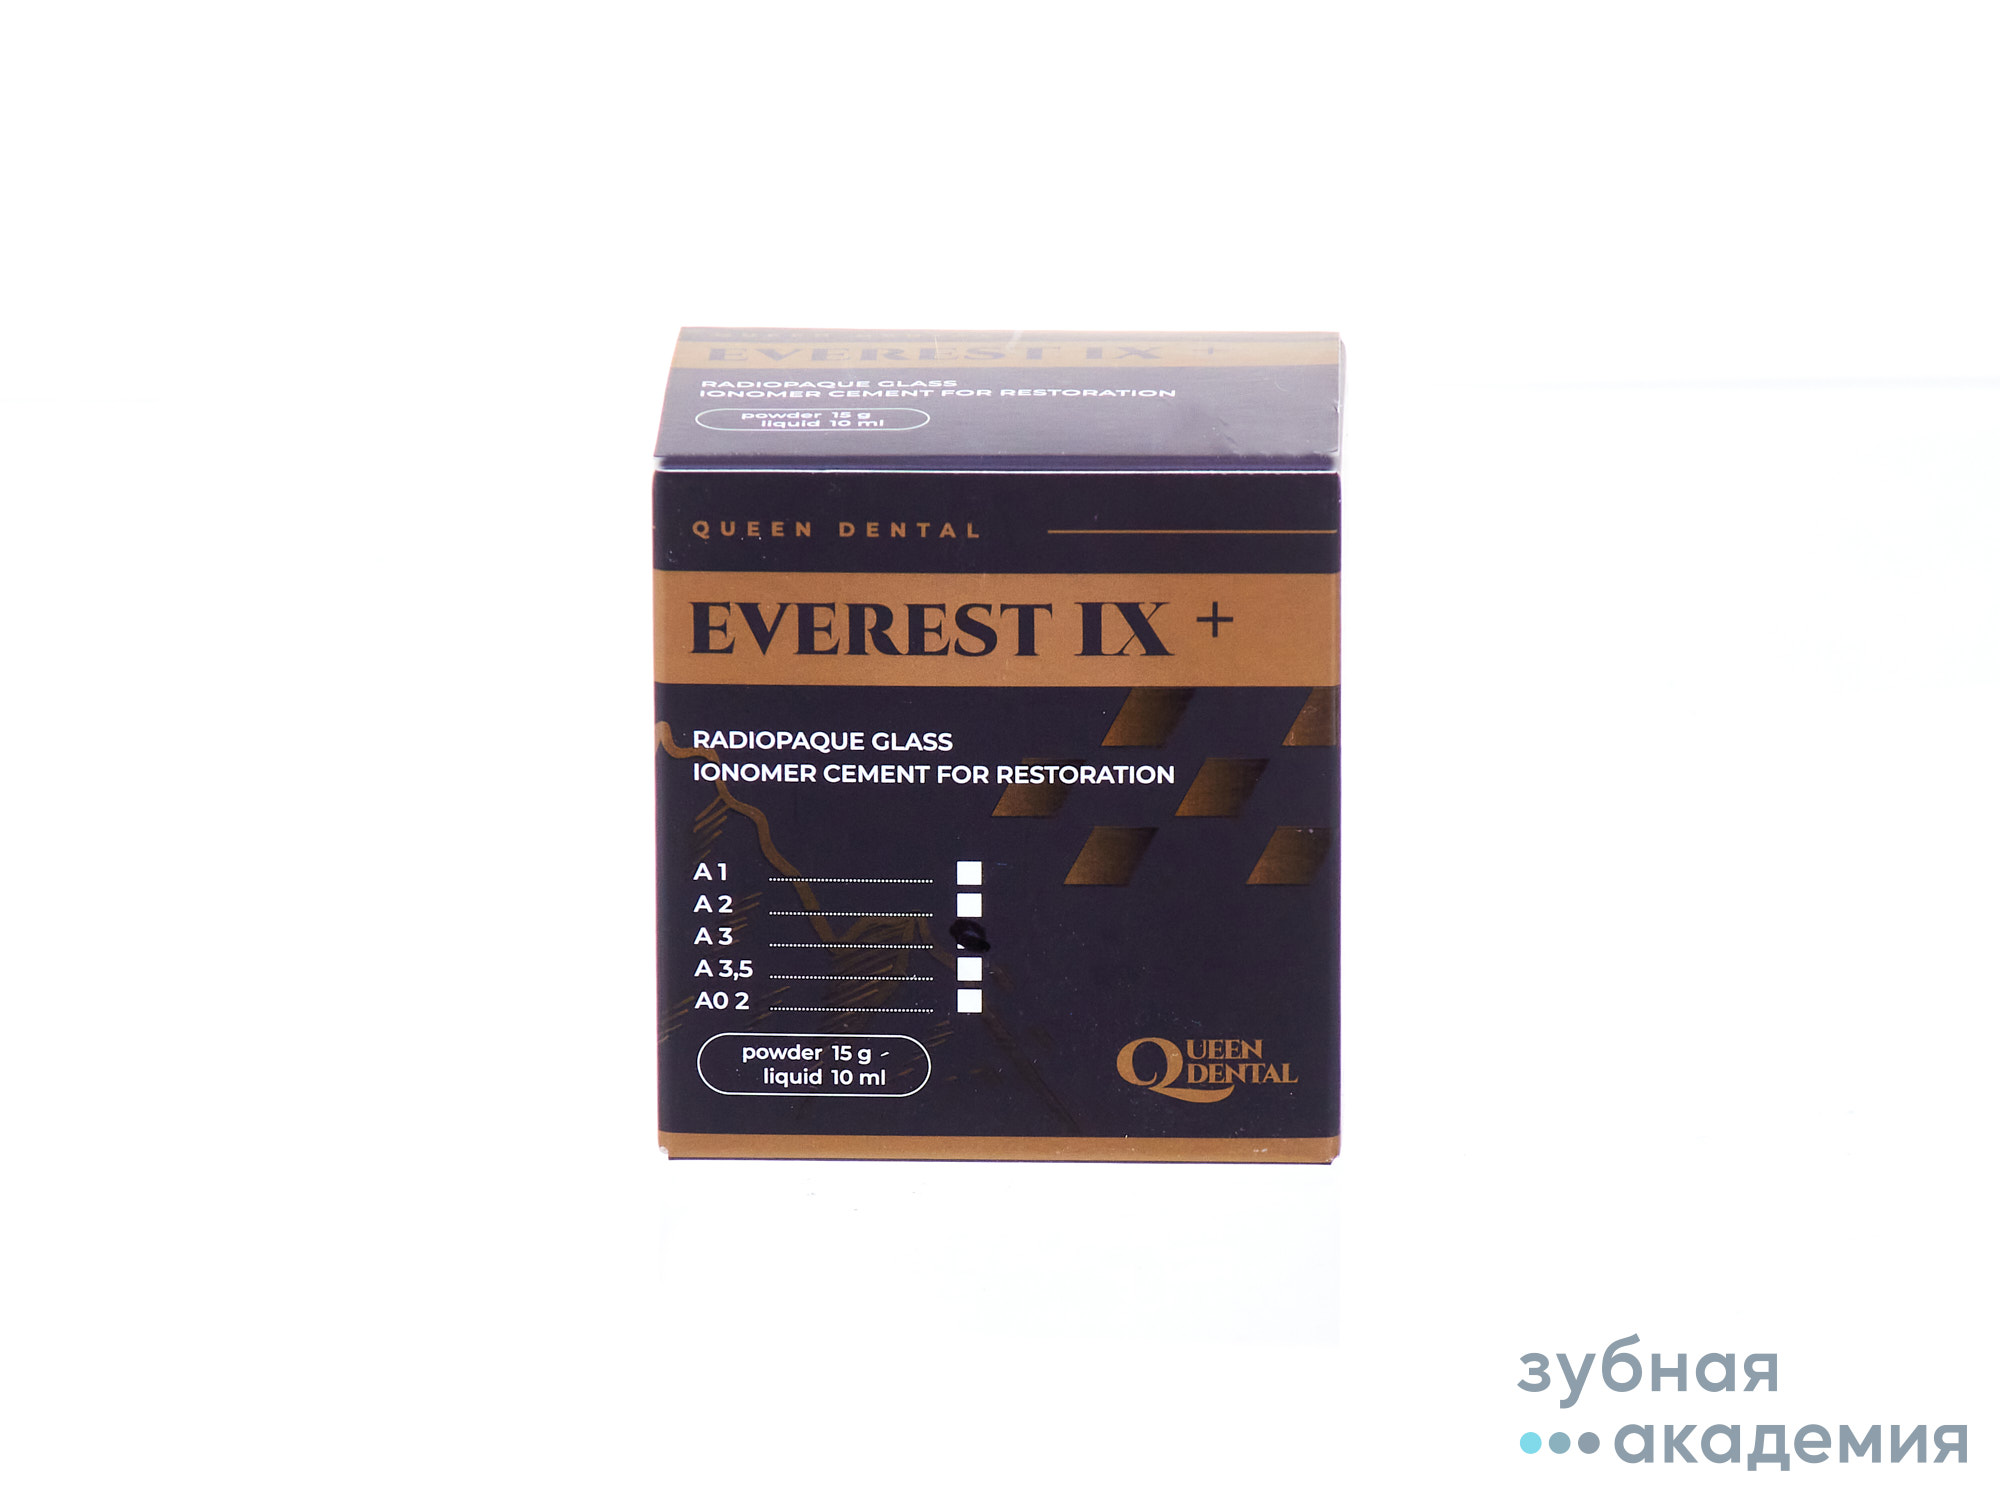 Эверест IX (Everest IX), A3, стеклоиономерный реставрац. цемент, 15гр+10мл, Queen Dental/Германия